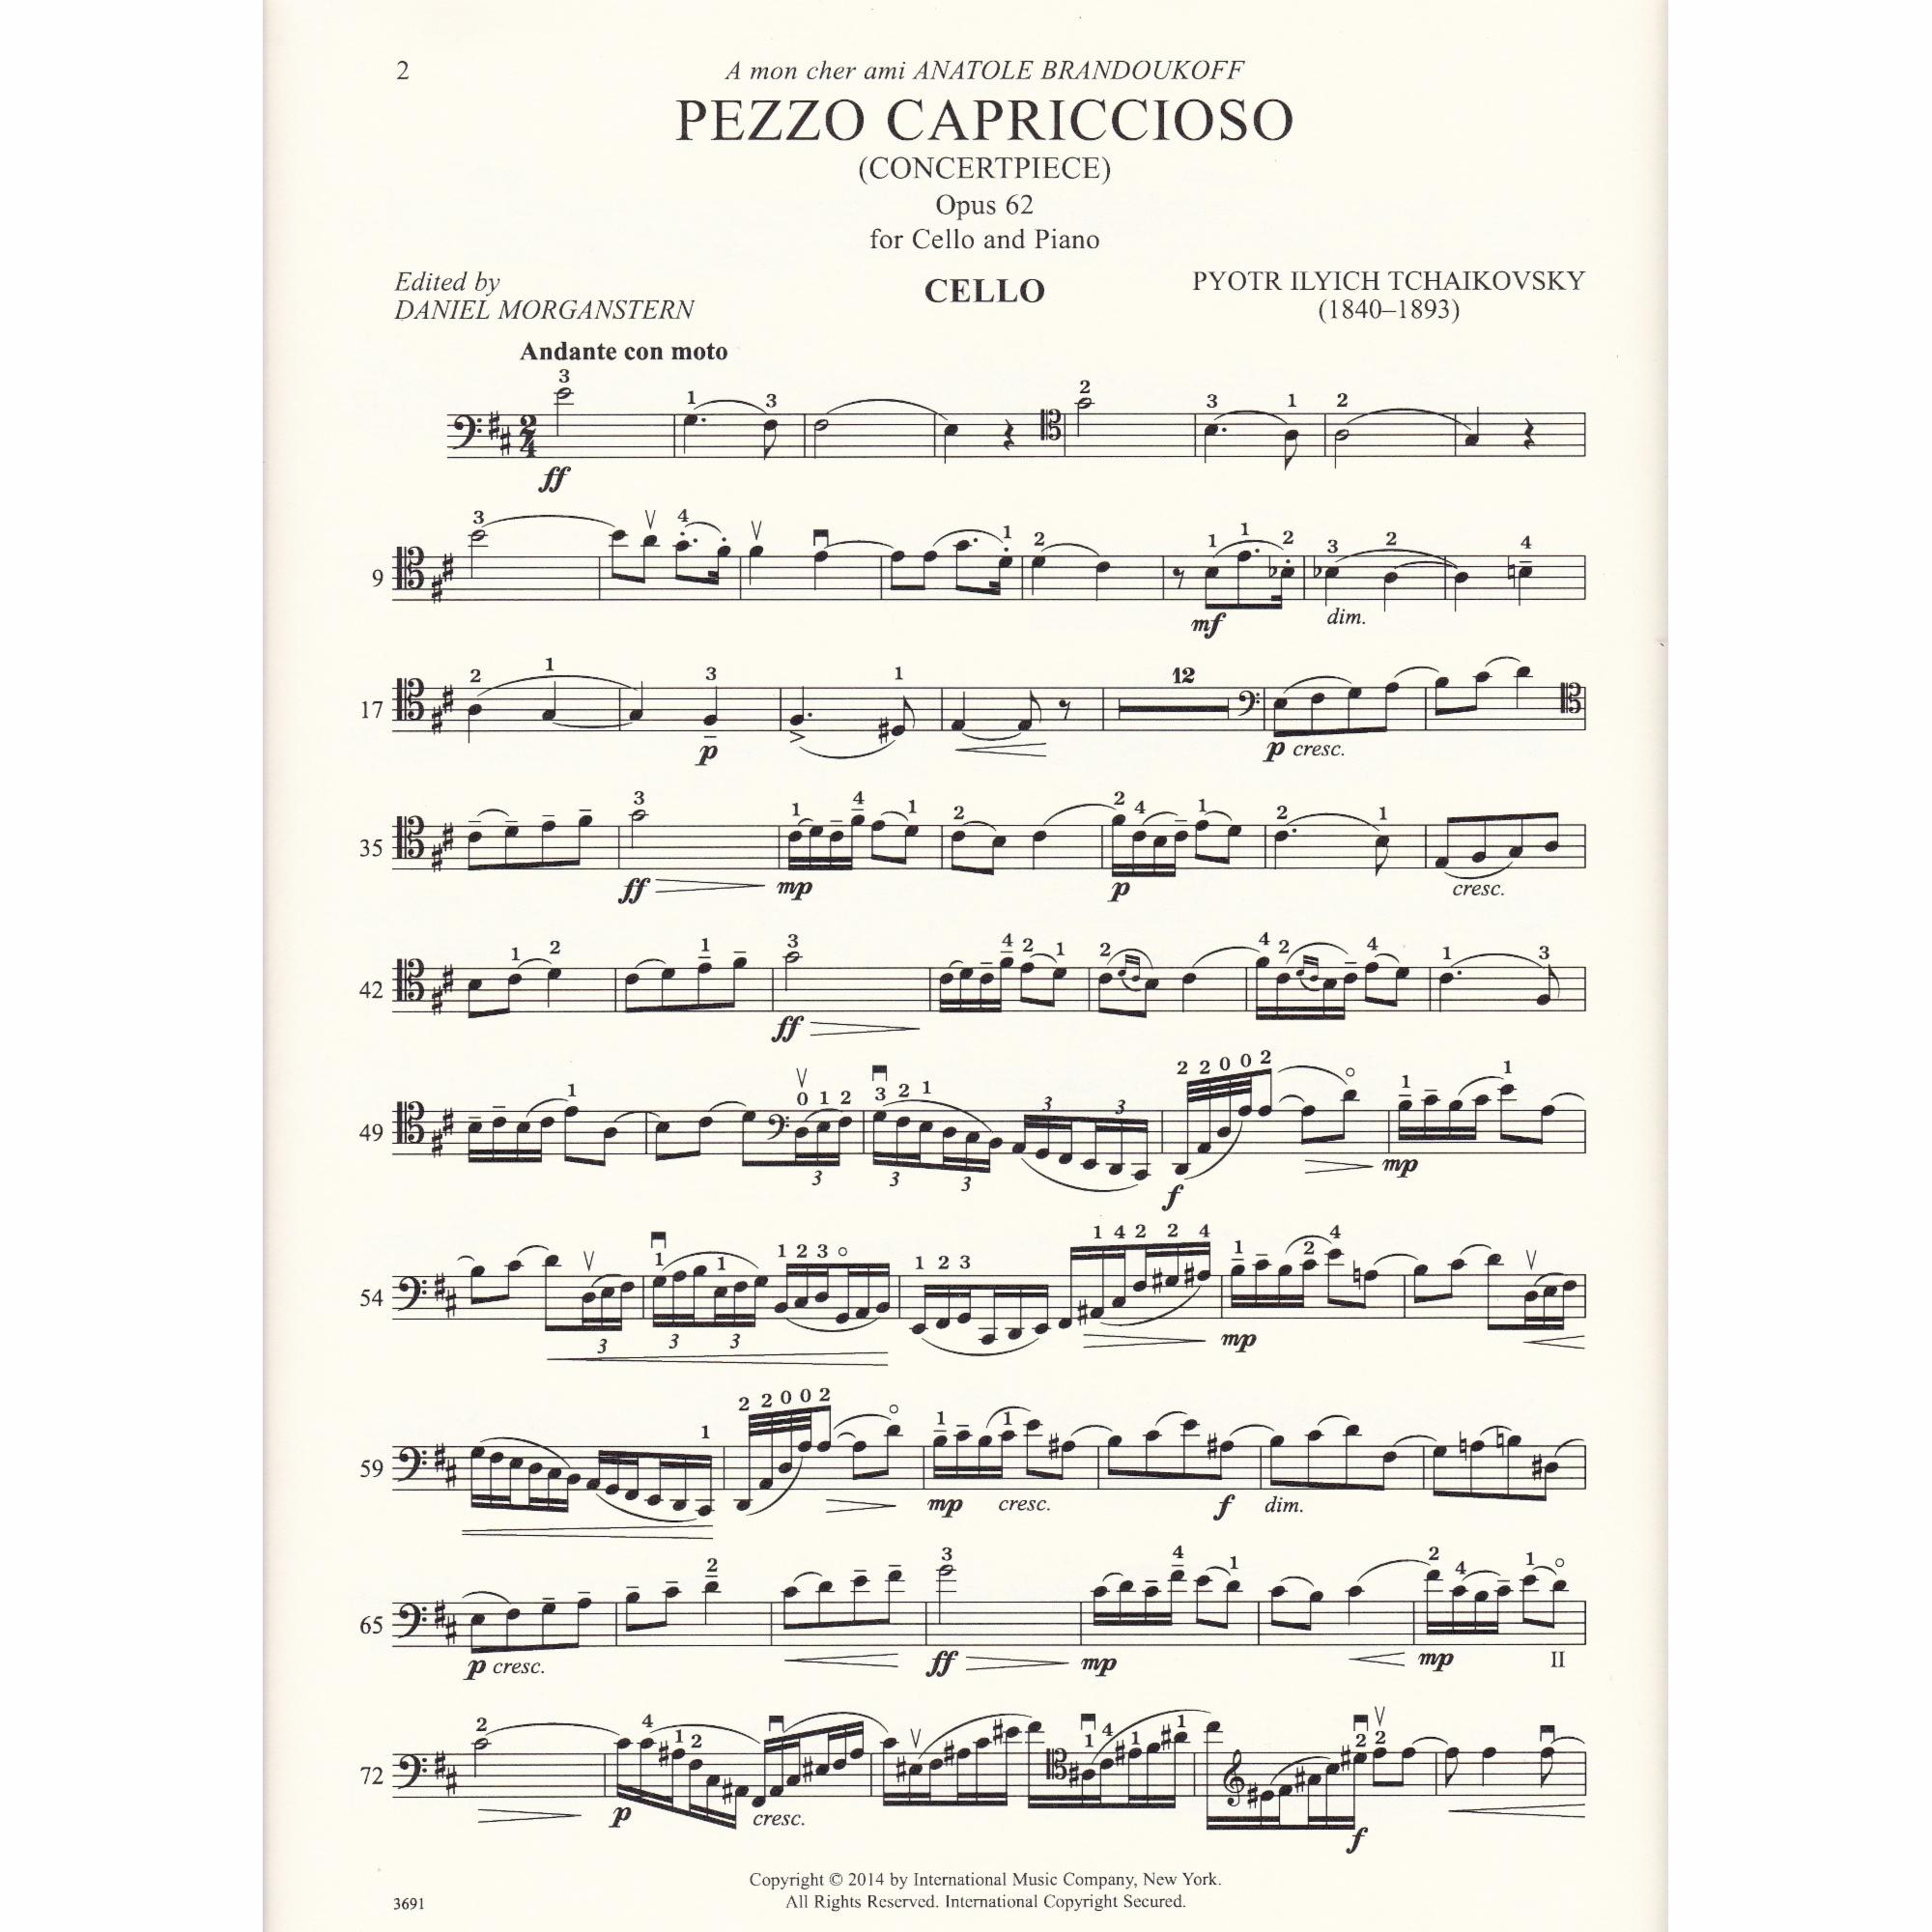 Pezzo Capriccioso in B Minor for Cello and Piano, Op. 62